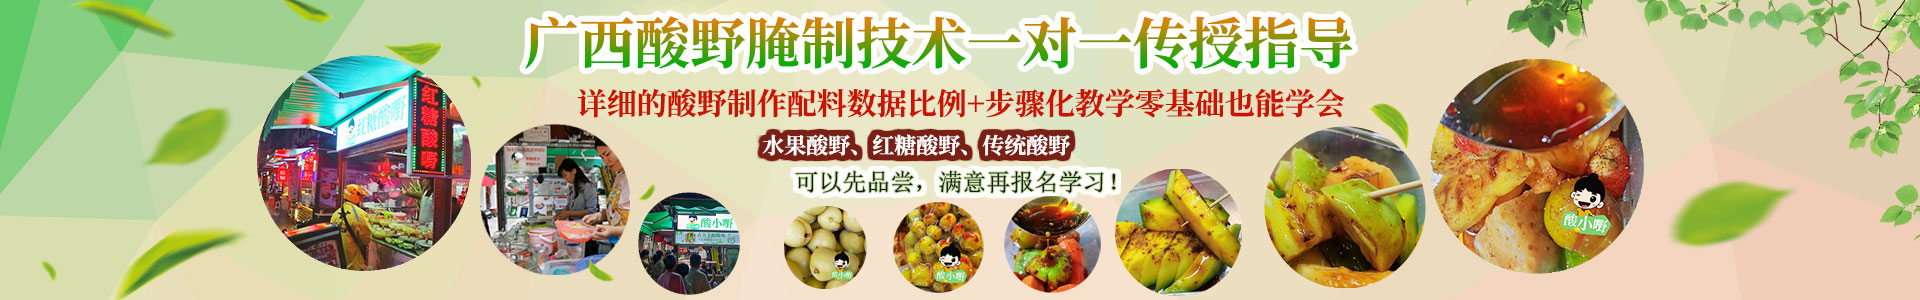 柳州酸嘢-酸品-酸料-酸野水果做法与配料学费多少钱